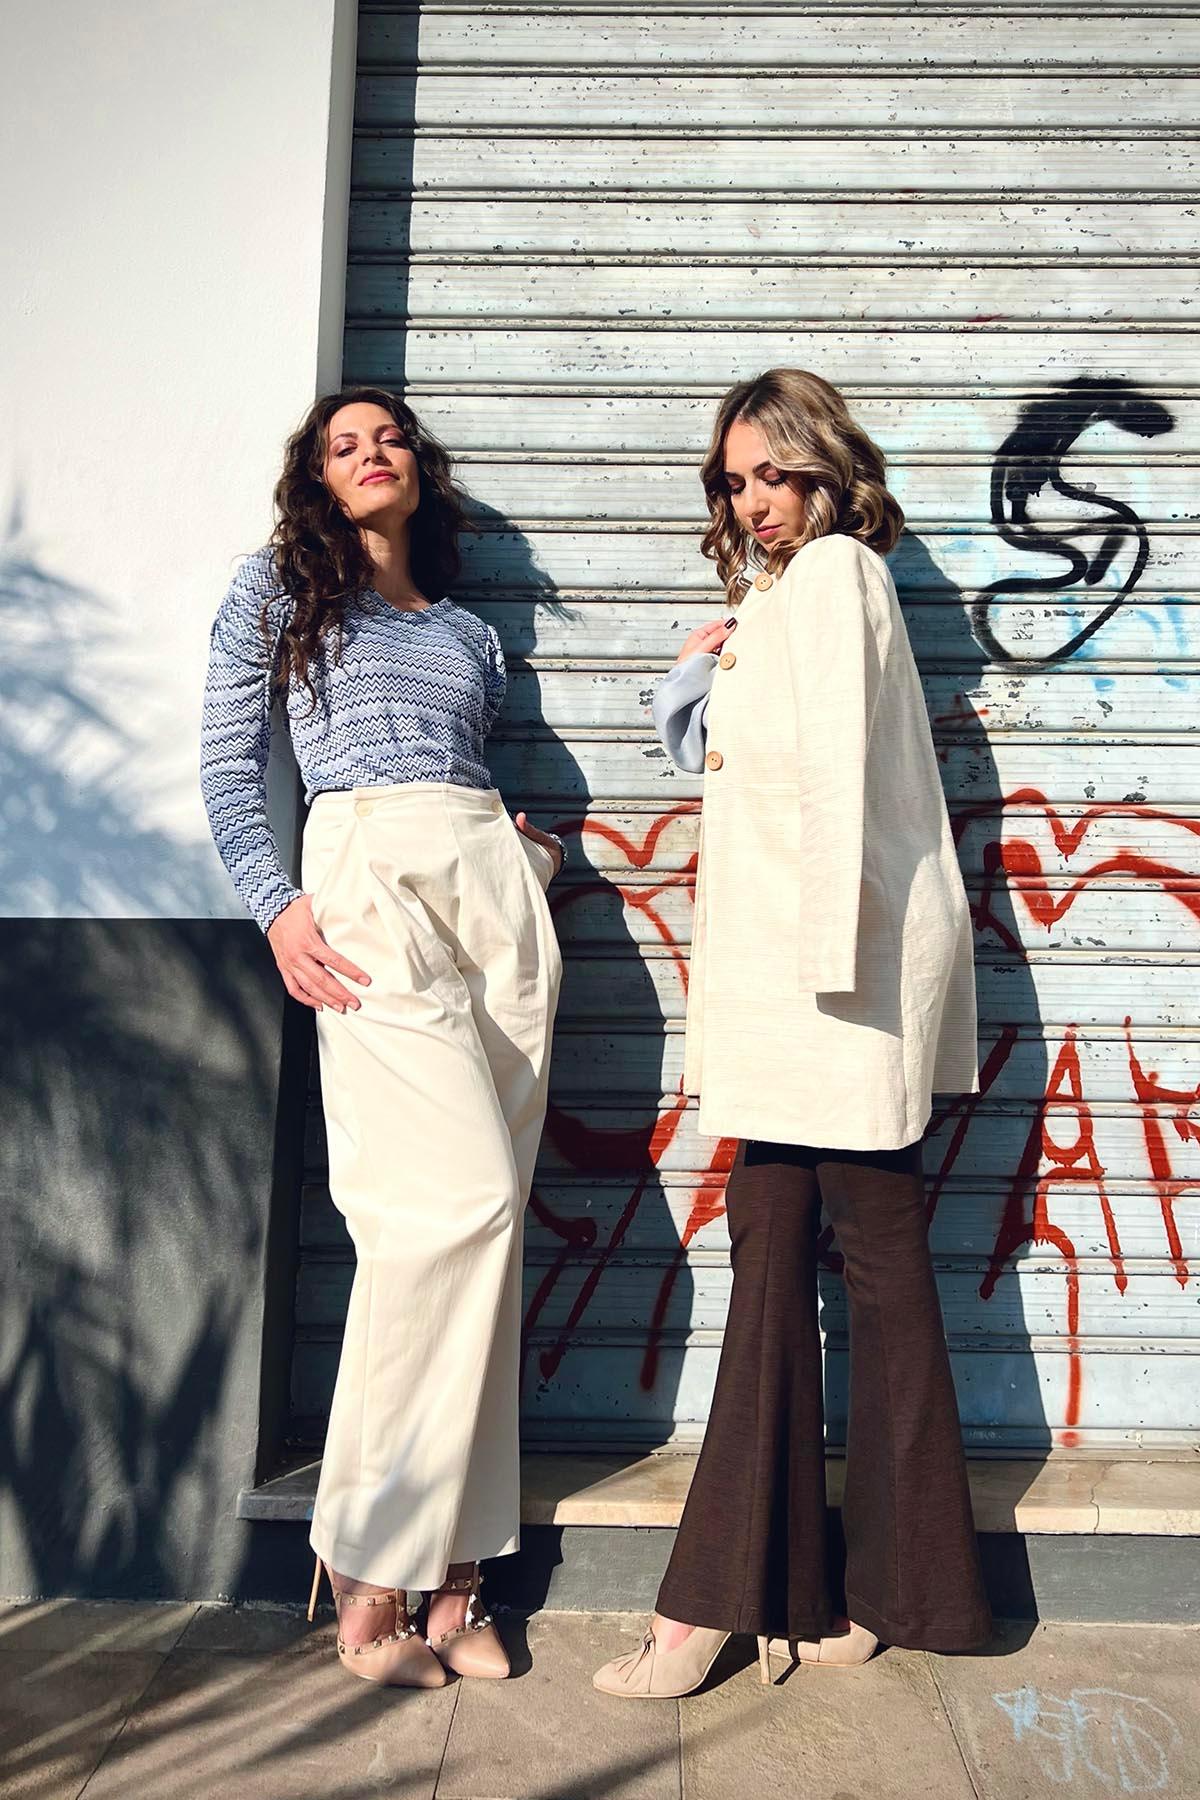 Flavia Amato indossa Pantalone in cotone biologico Elisa brand malia lab atelier moda etica sostenibile artigianale abbigliamento sostenibile